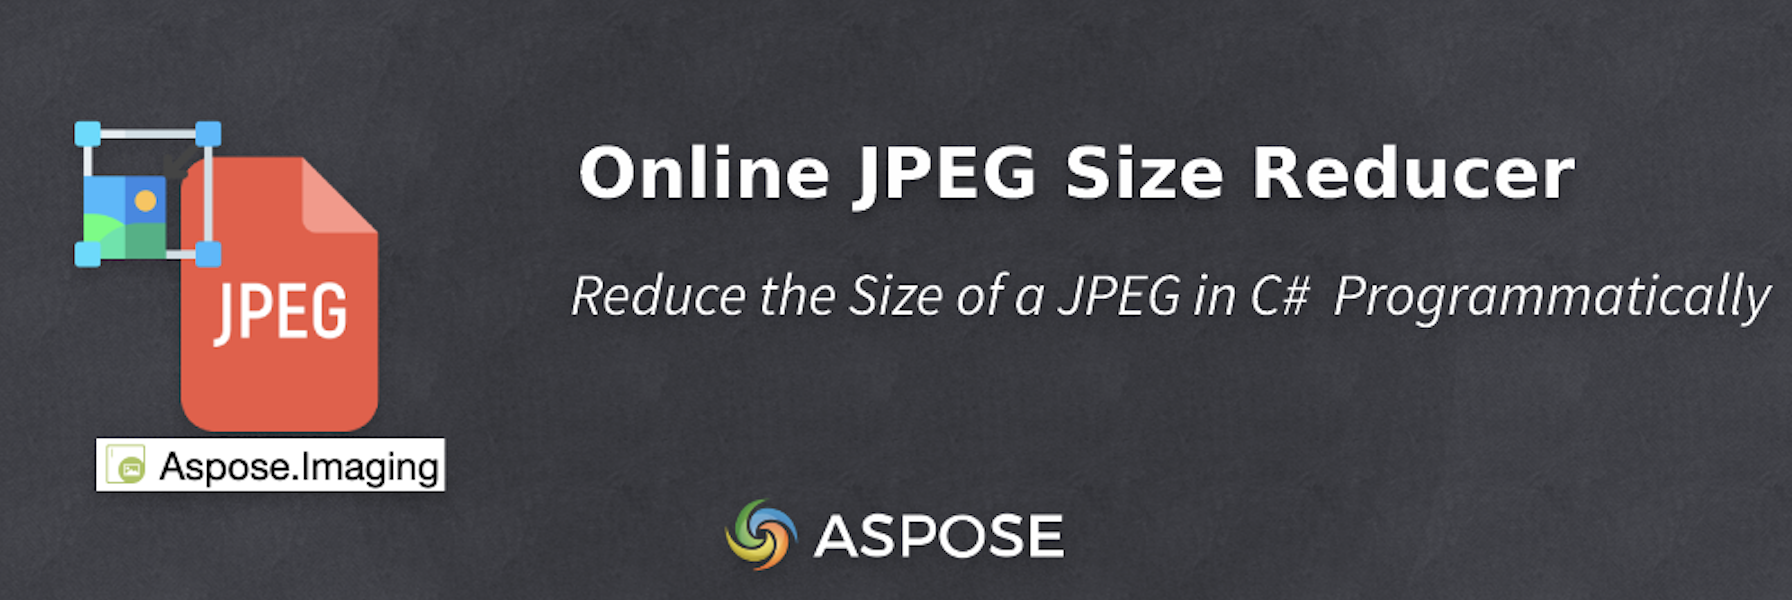 Riduci le dimensioni di un JPEG in C# - Riduttore di dimensioni JPEG online